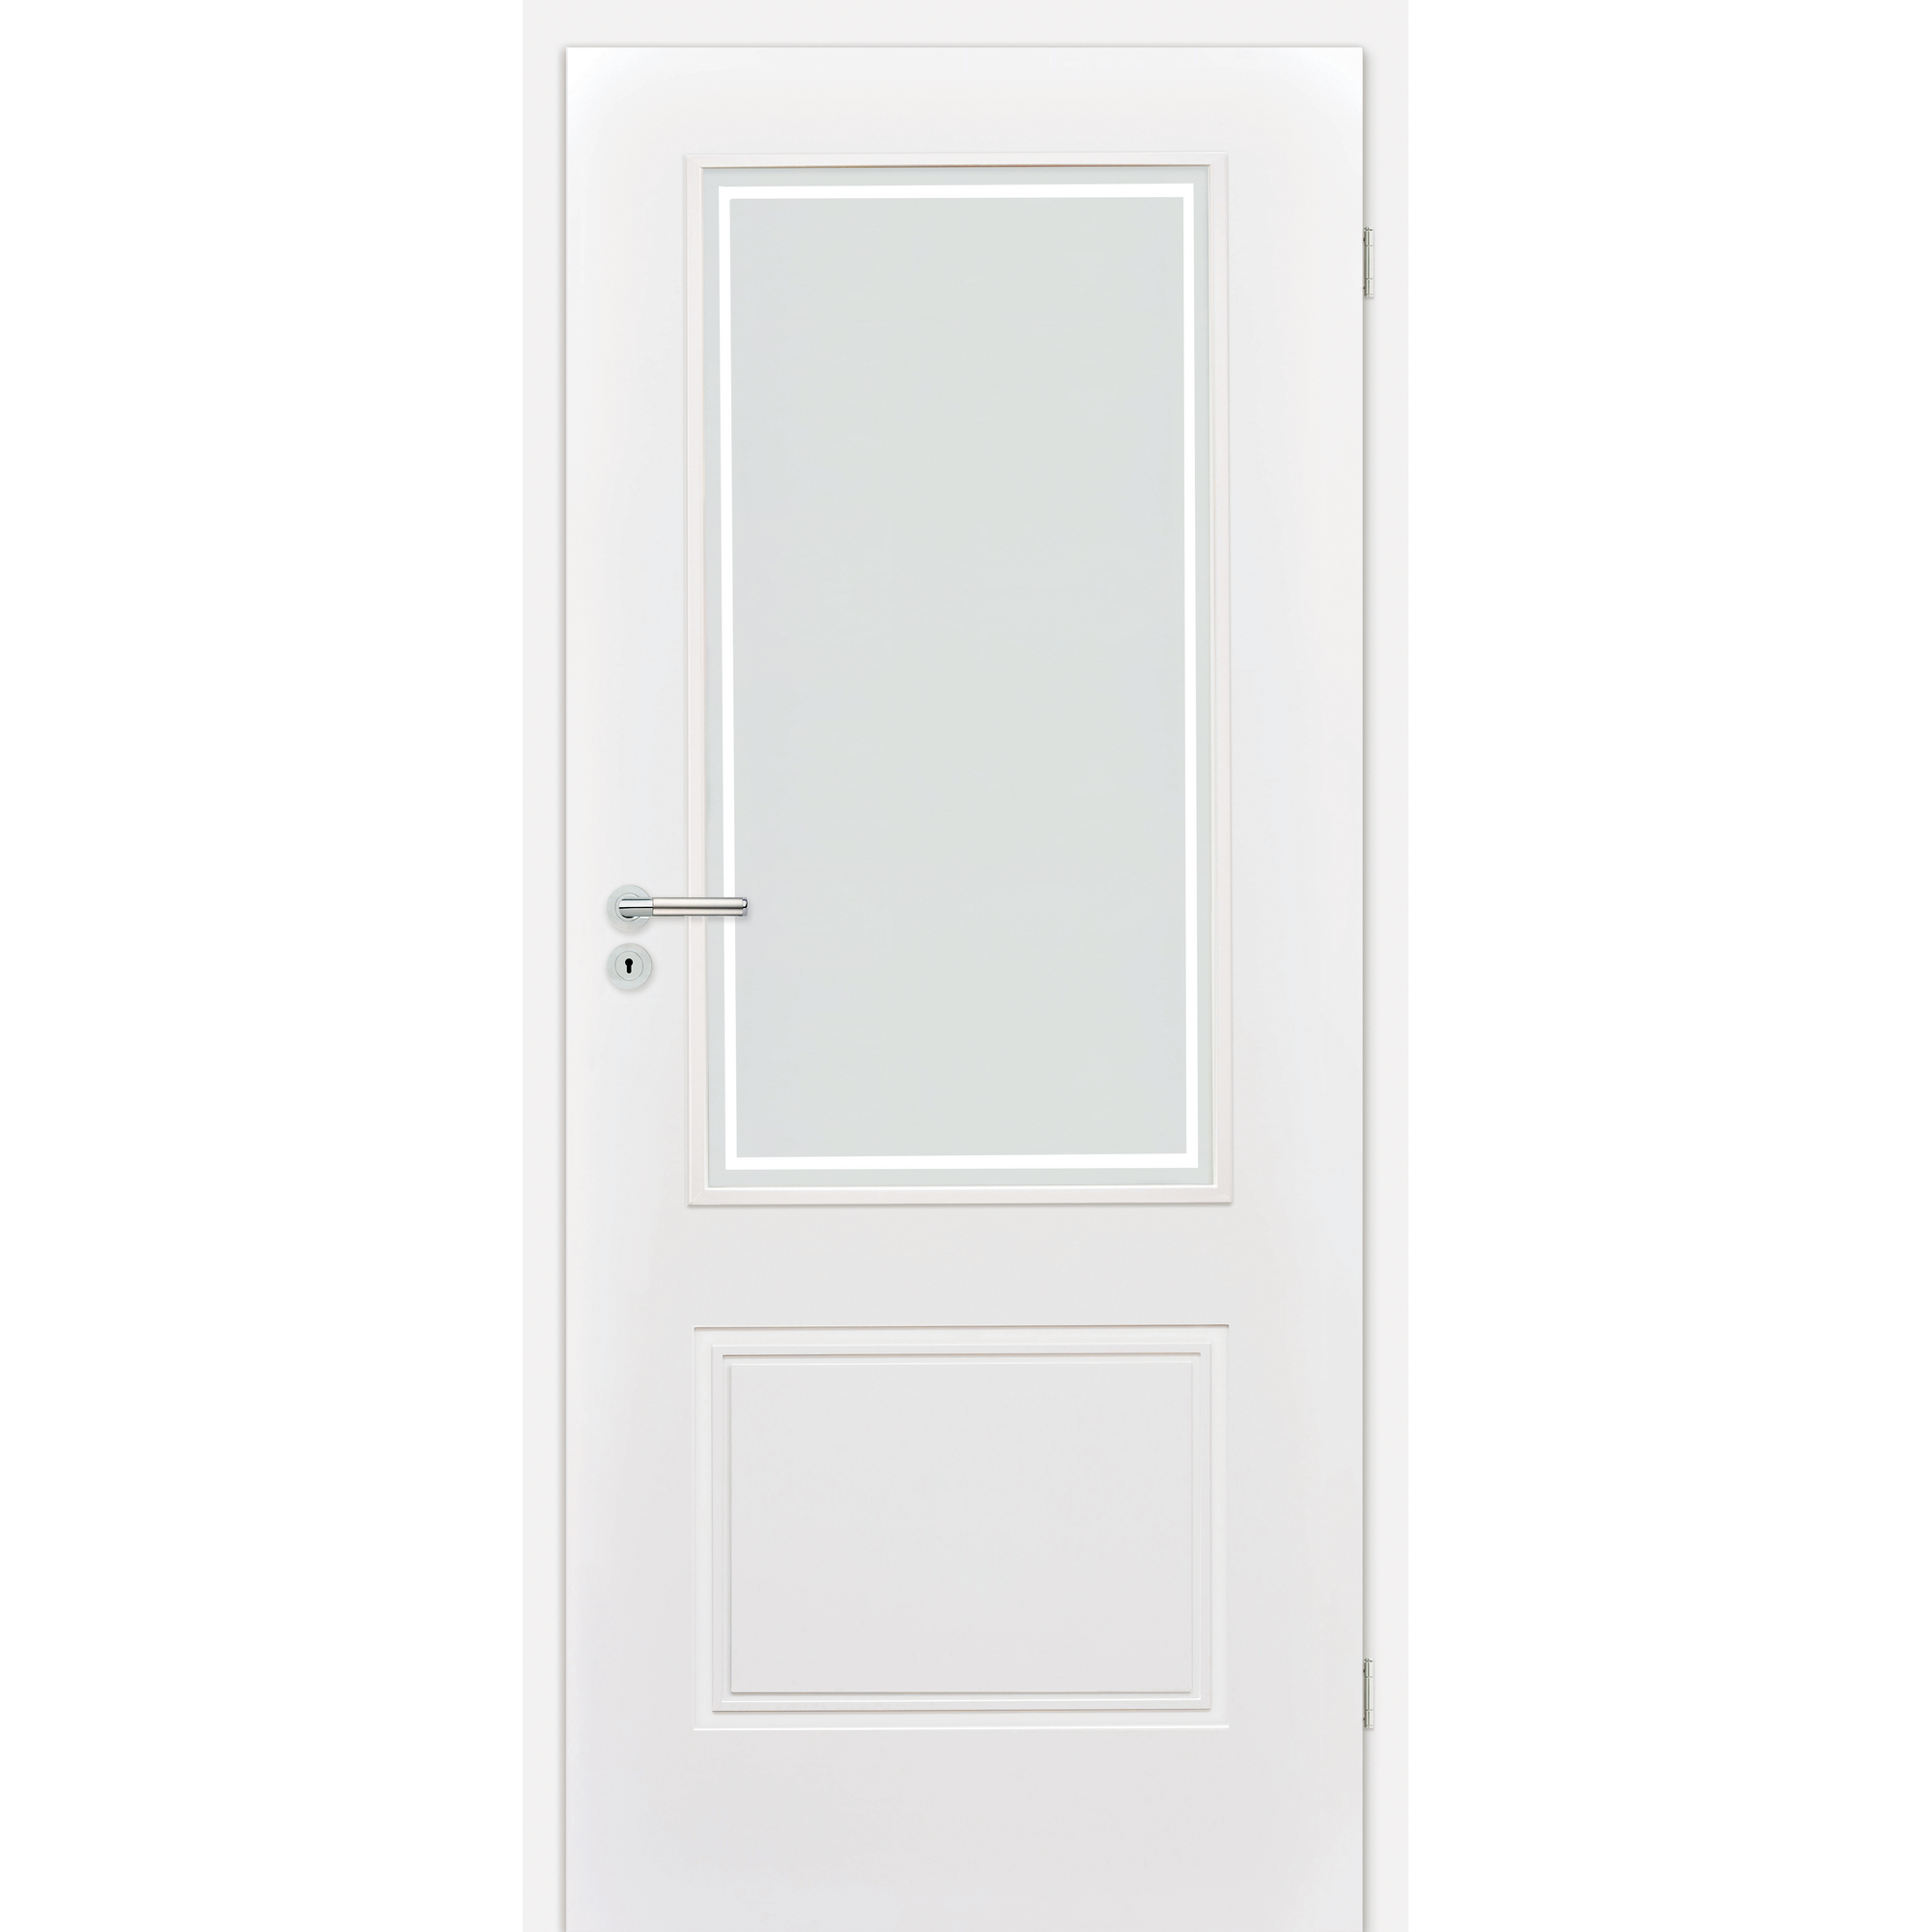 Innentür 'Linea 1.3 RS' mit Lichtausschnitt weiß 198,5 x 98,5 cm, Rechtsanschlag + product picture